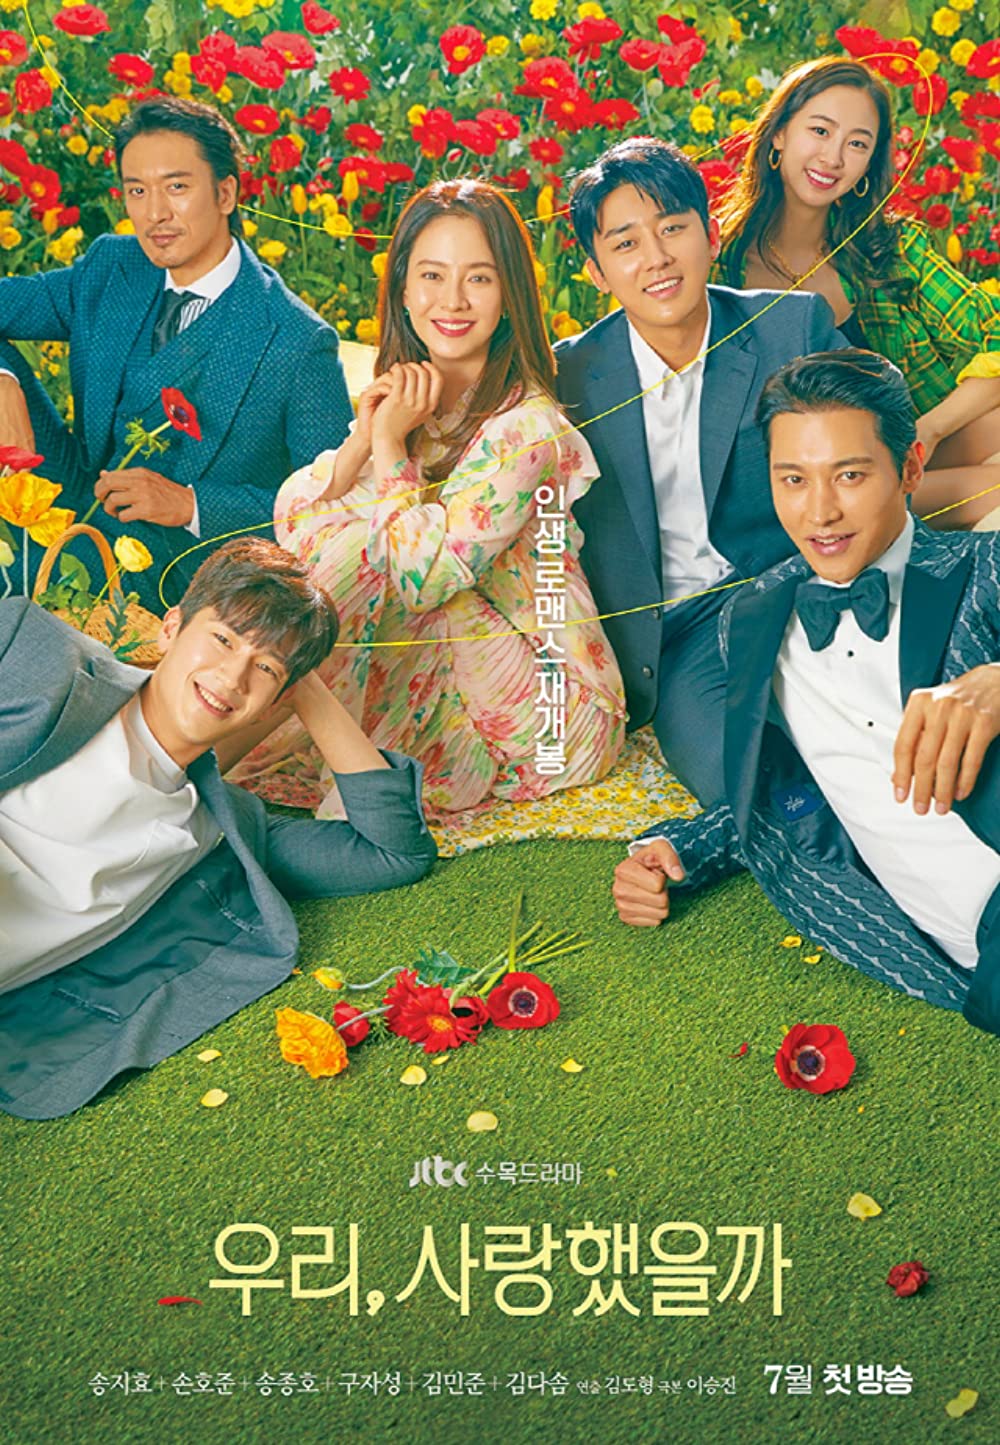 7 Rekomendasi drama Korea romantis cewek jadi rebutan banyak cowok